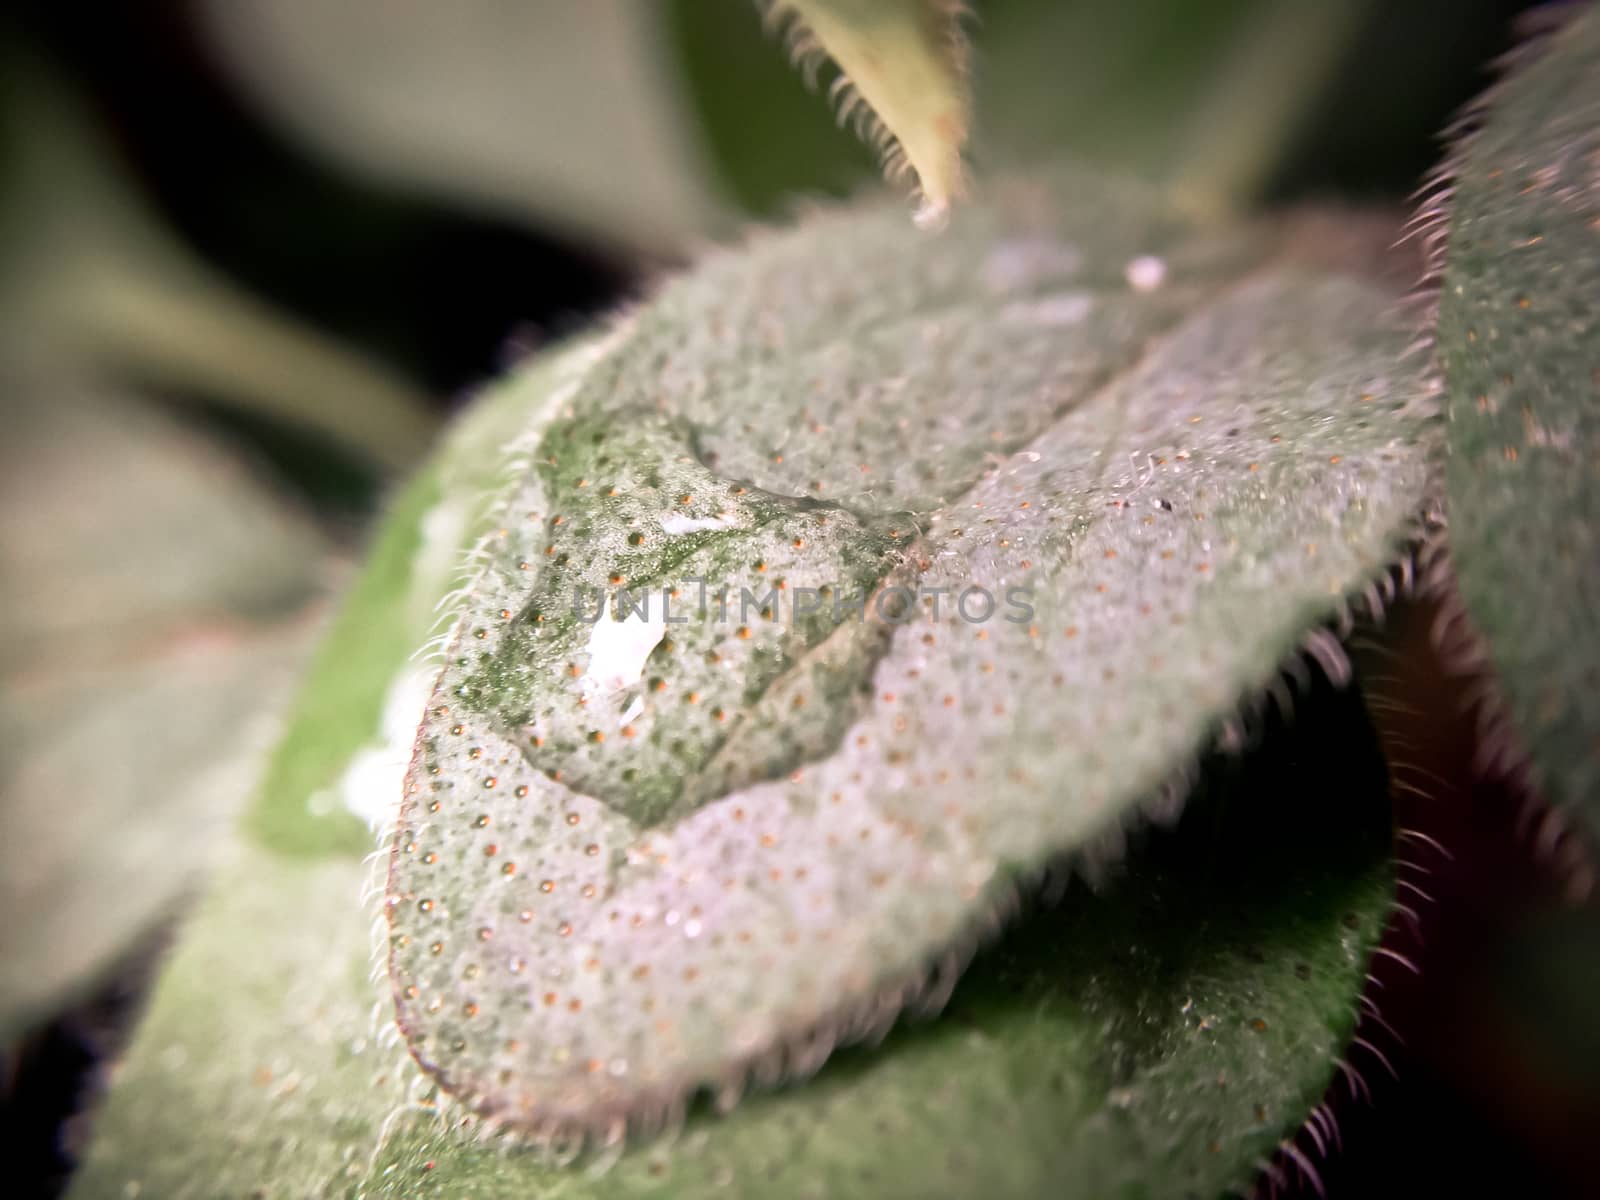 Water drop on oregano leaf by gigiobbr